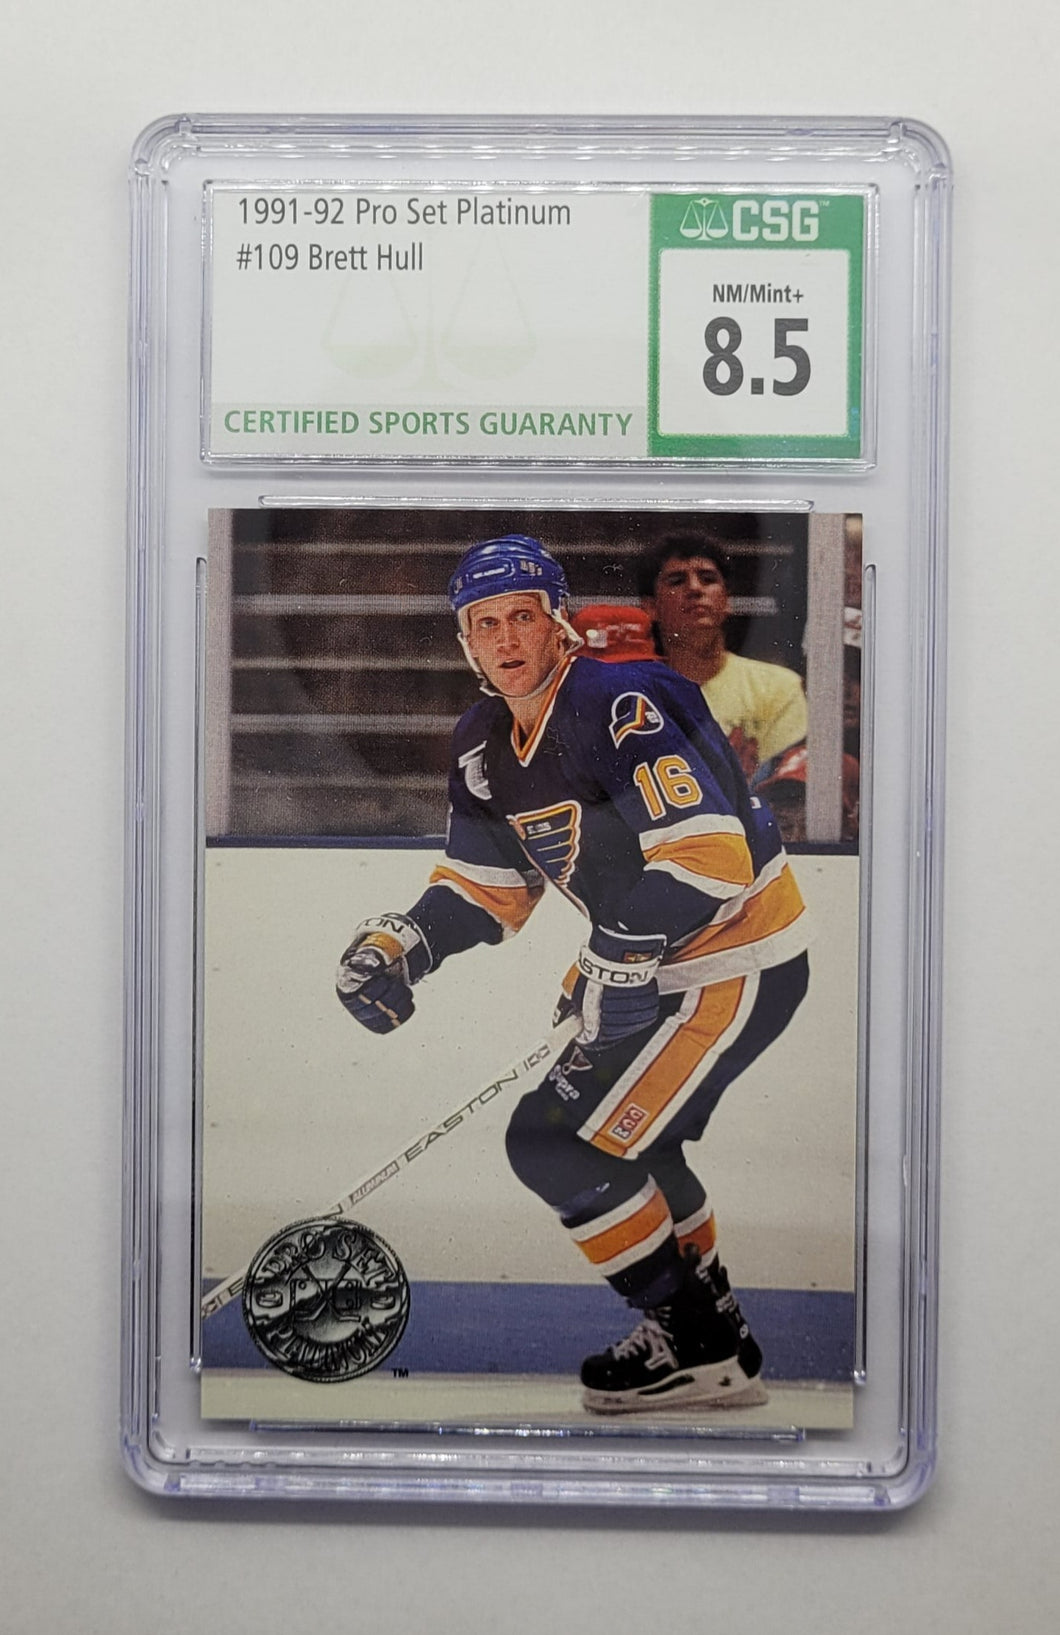 1991-92 Pro Set Platinum Brett Hull Hockey Card CSG 8.5